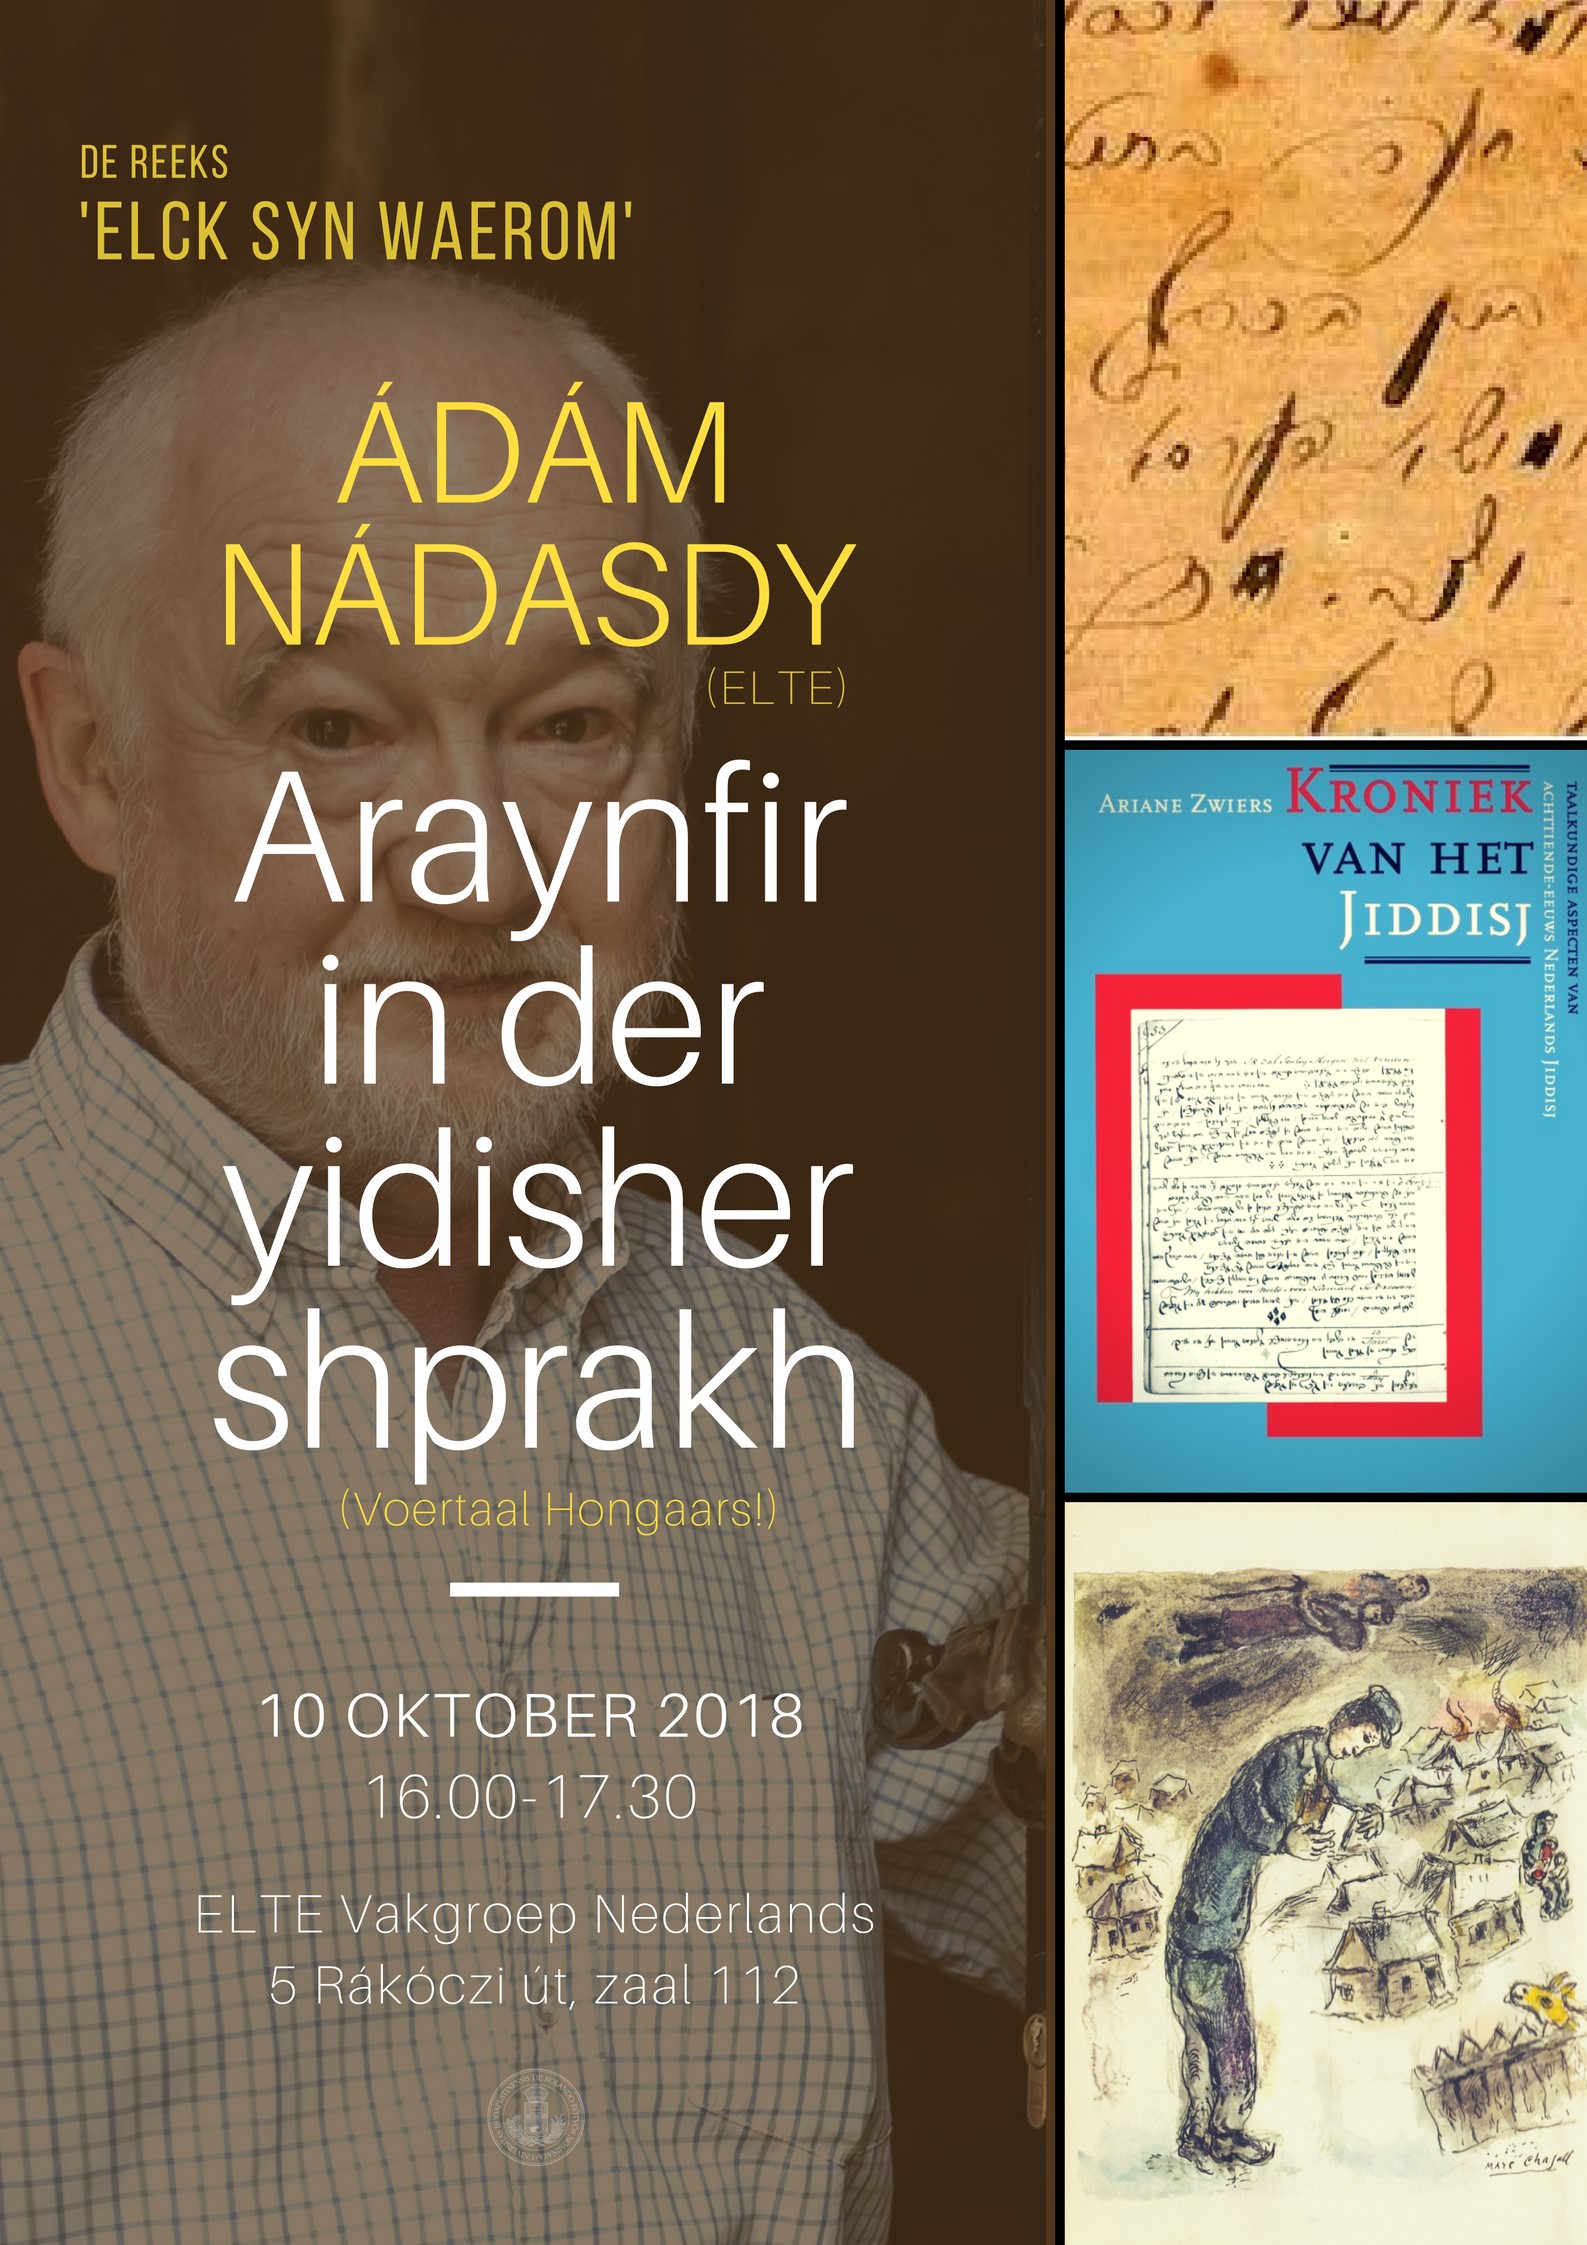 Nádasdy Ádám 10 10 2018 (1587 x 2245)